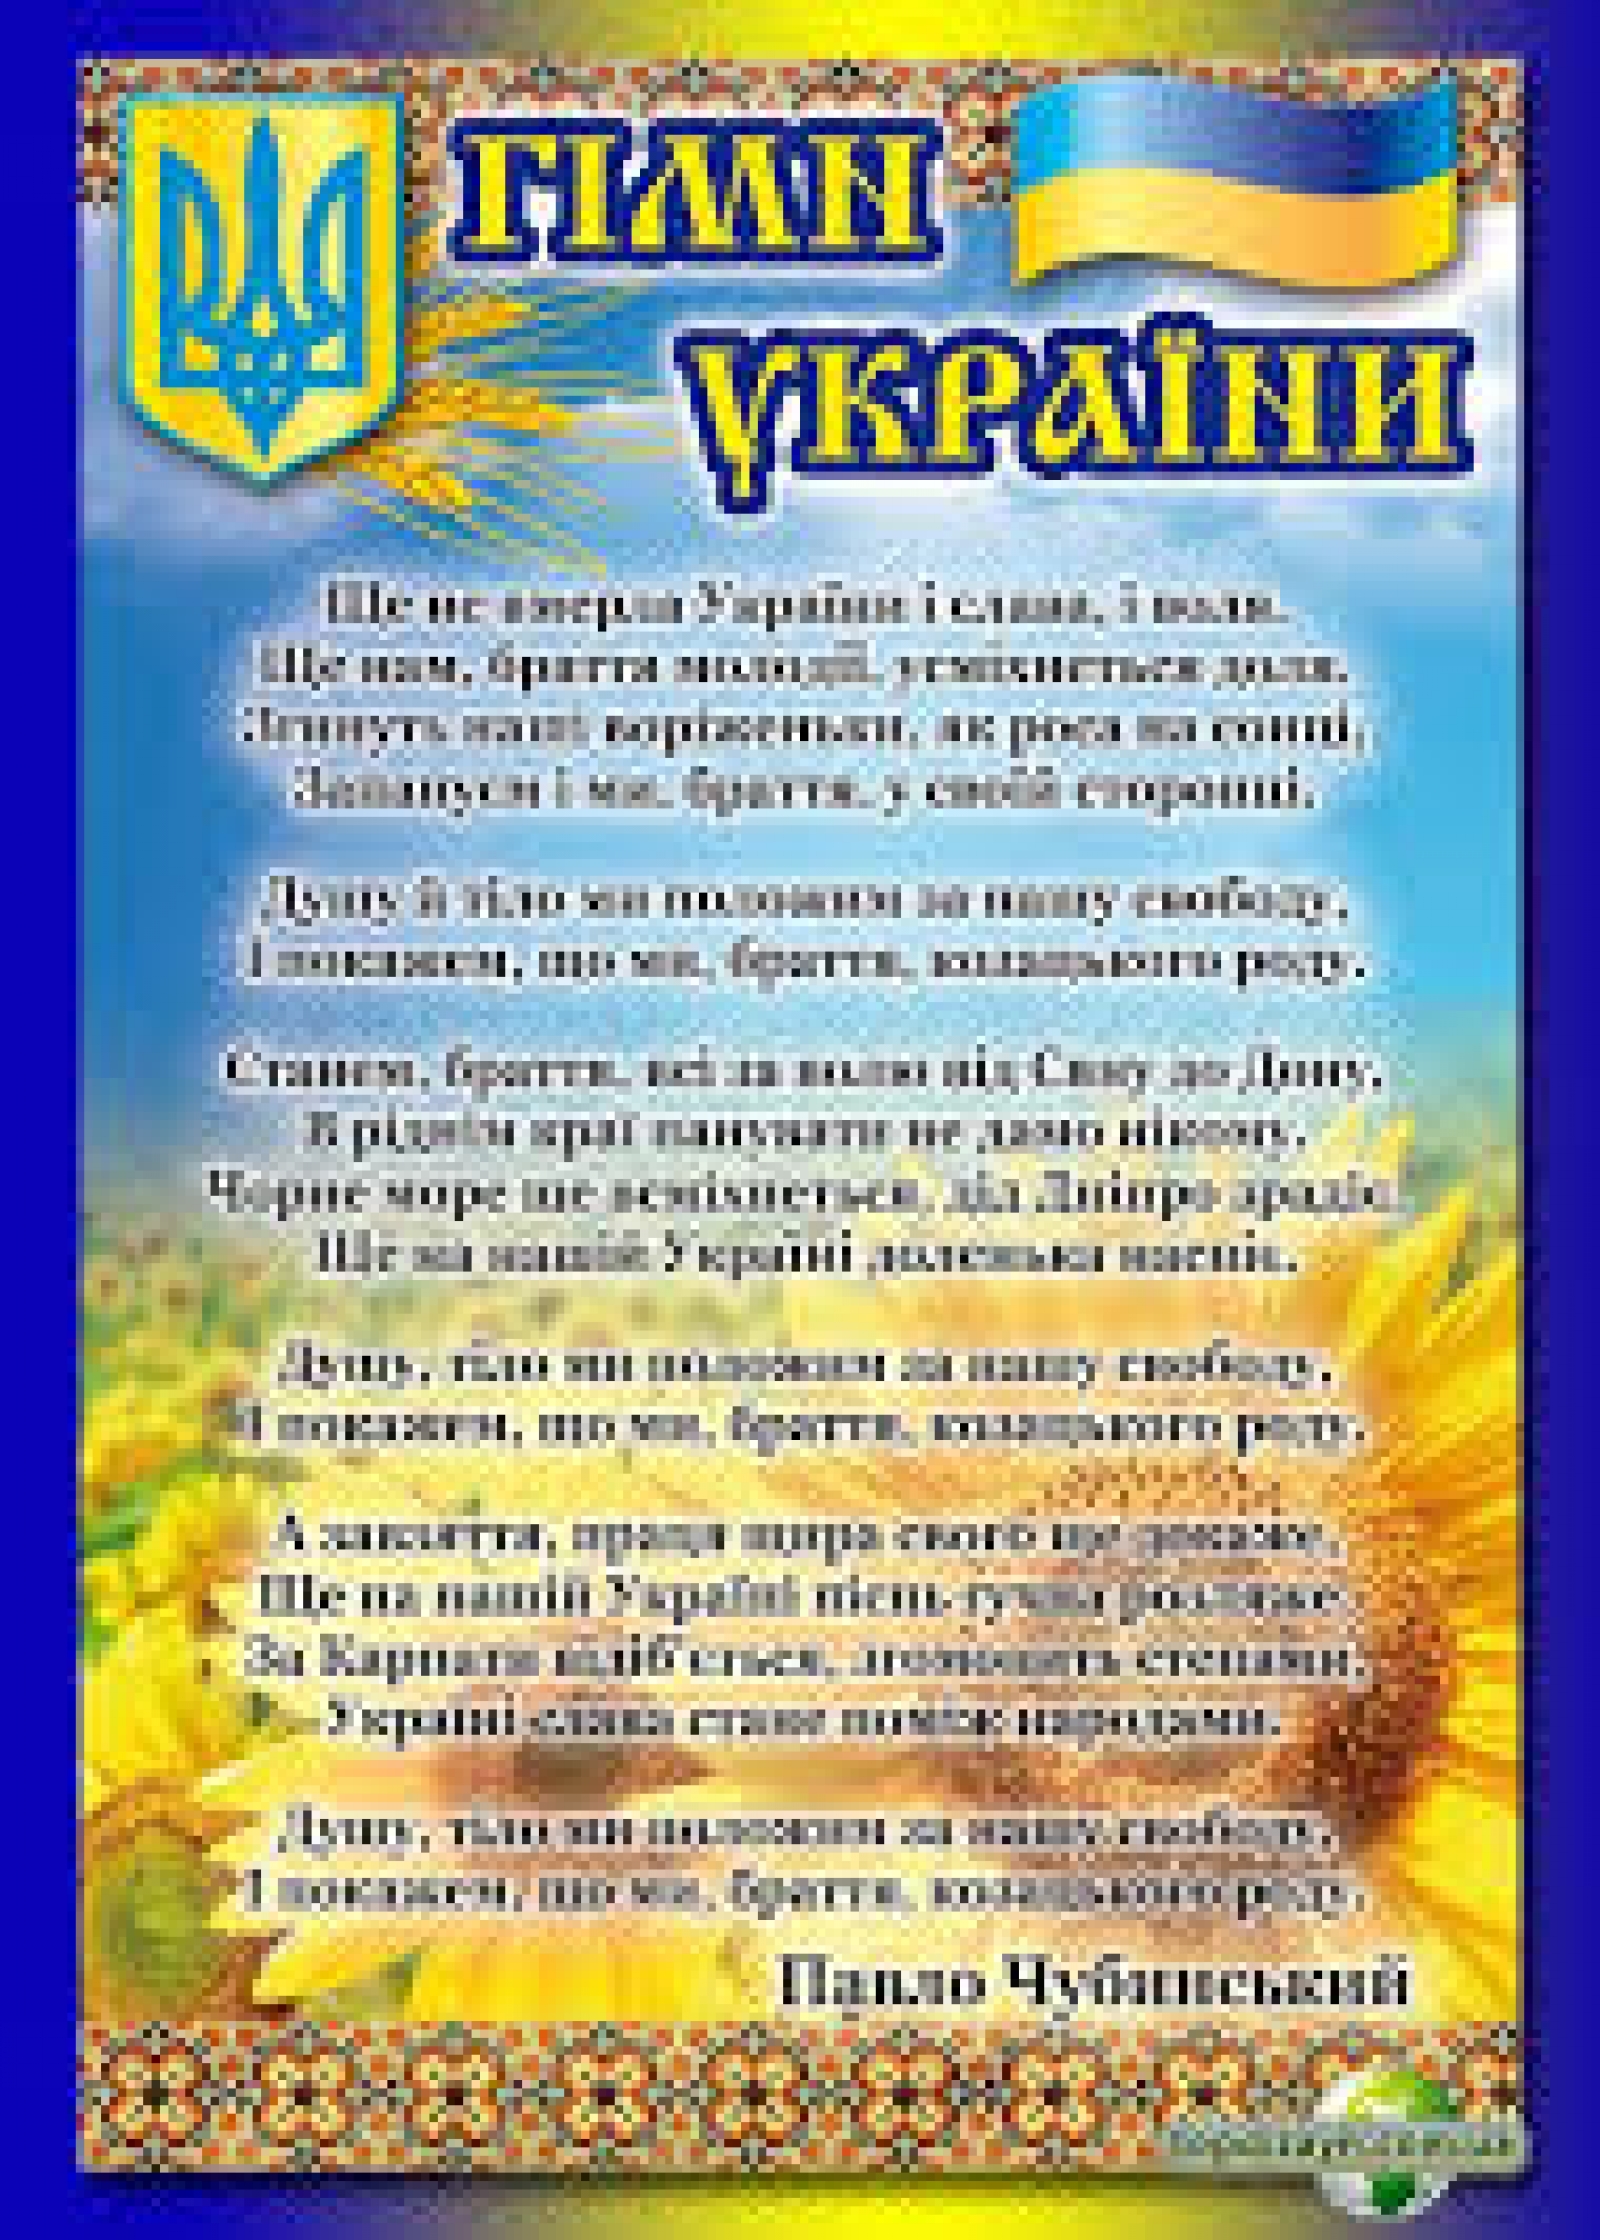 Читать про украину